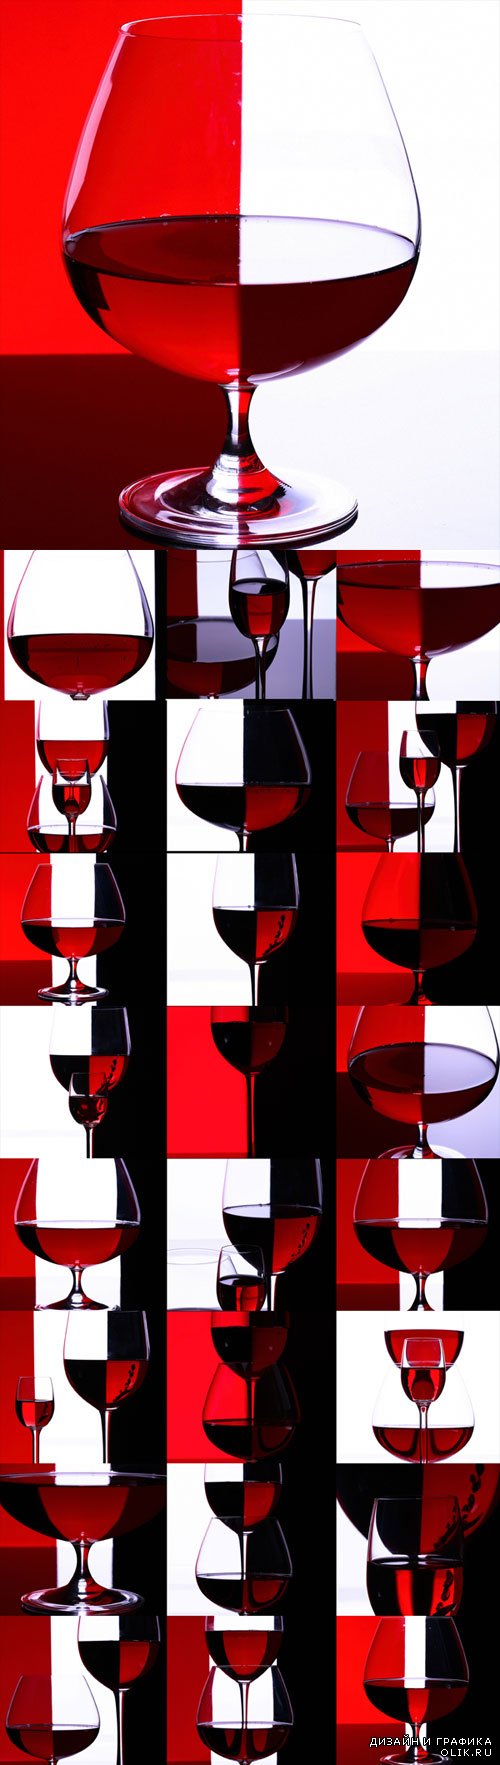 Бокалы вина в элегантном красно-черном сочетании